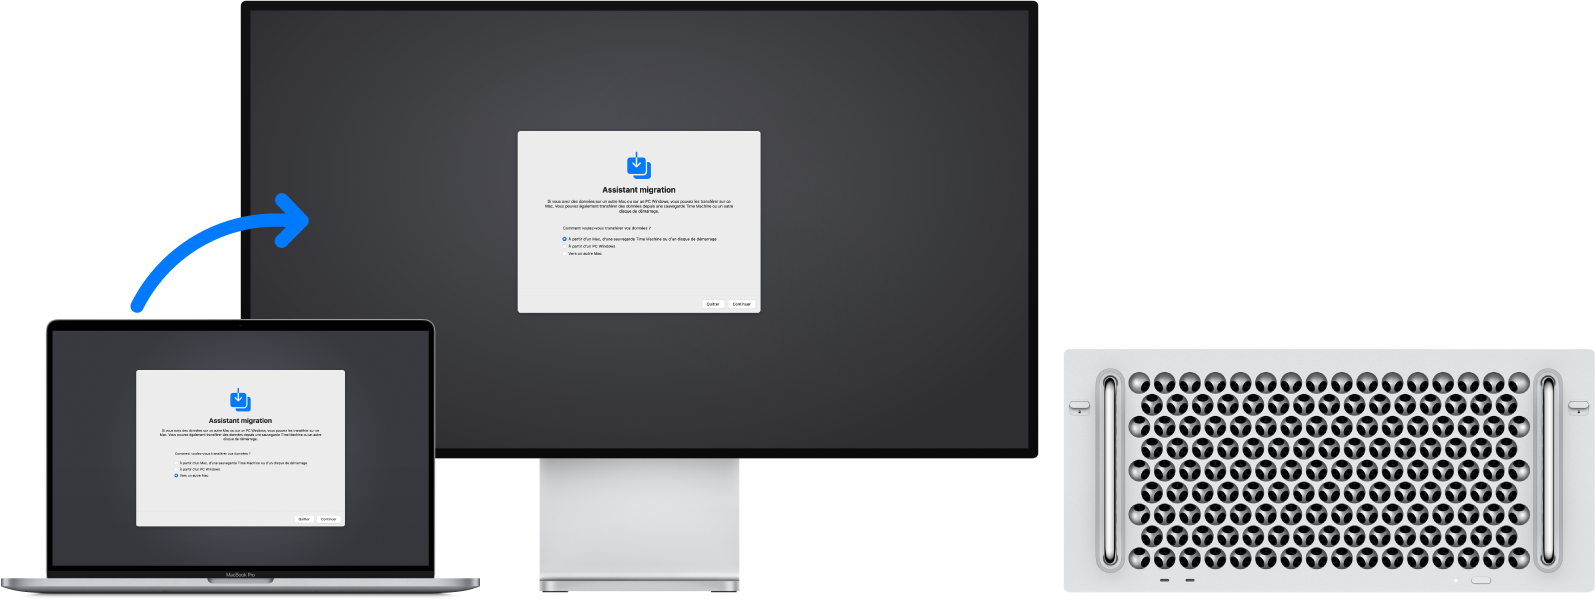 Un MacBook Pro et un Mac Pro affichant tous les deux l’écran « Assistant migration ». Une flèche part du MacBook Pro et pointe vers le Mac Pro. Elle signifie que des données sont transférées du MacBook Pro vers le Mac Pro.